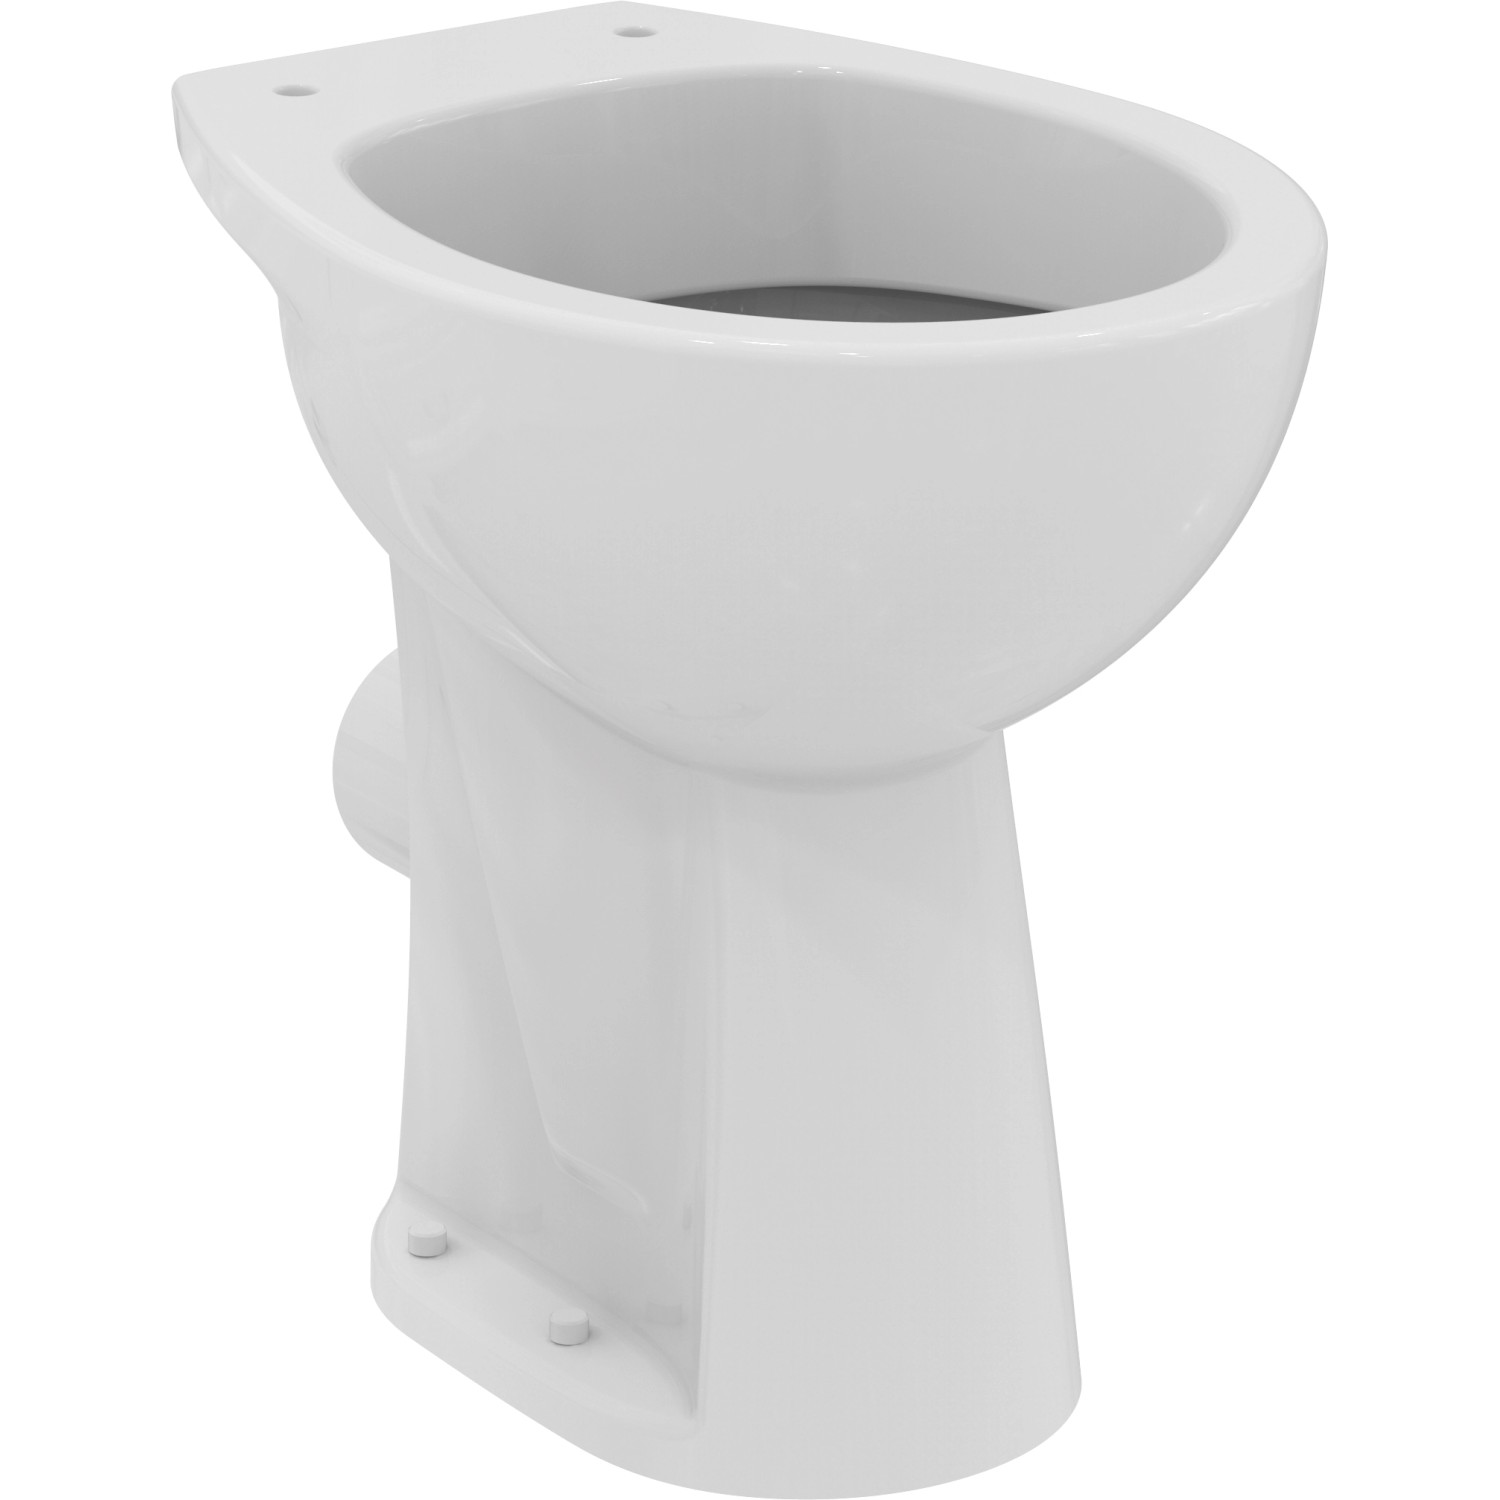 Ideal Standard Stand-Tiefspül-WC Weiß OBI kaufen bei Eurovit erhöht